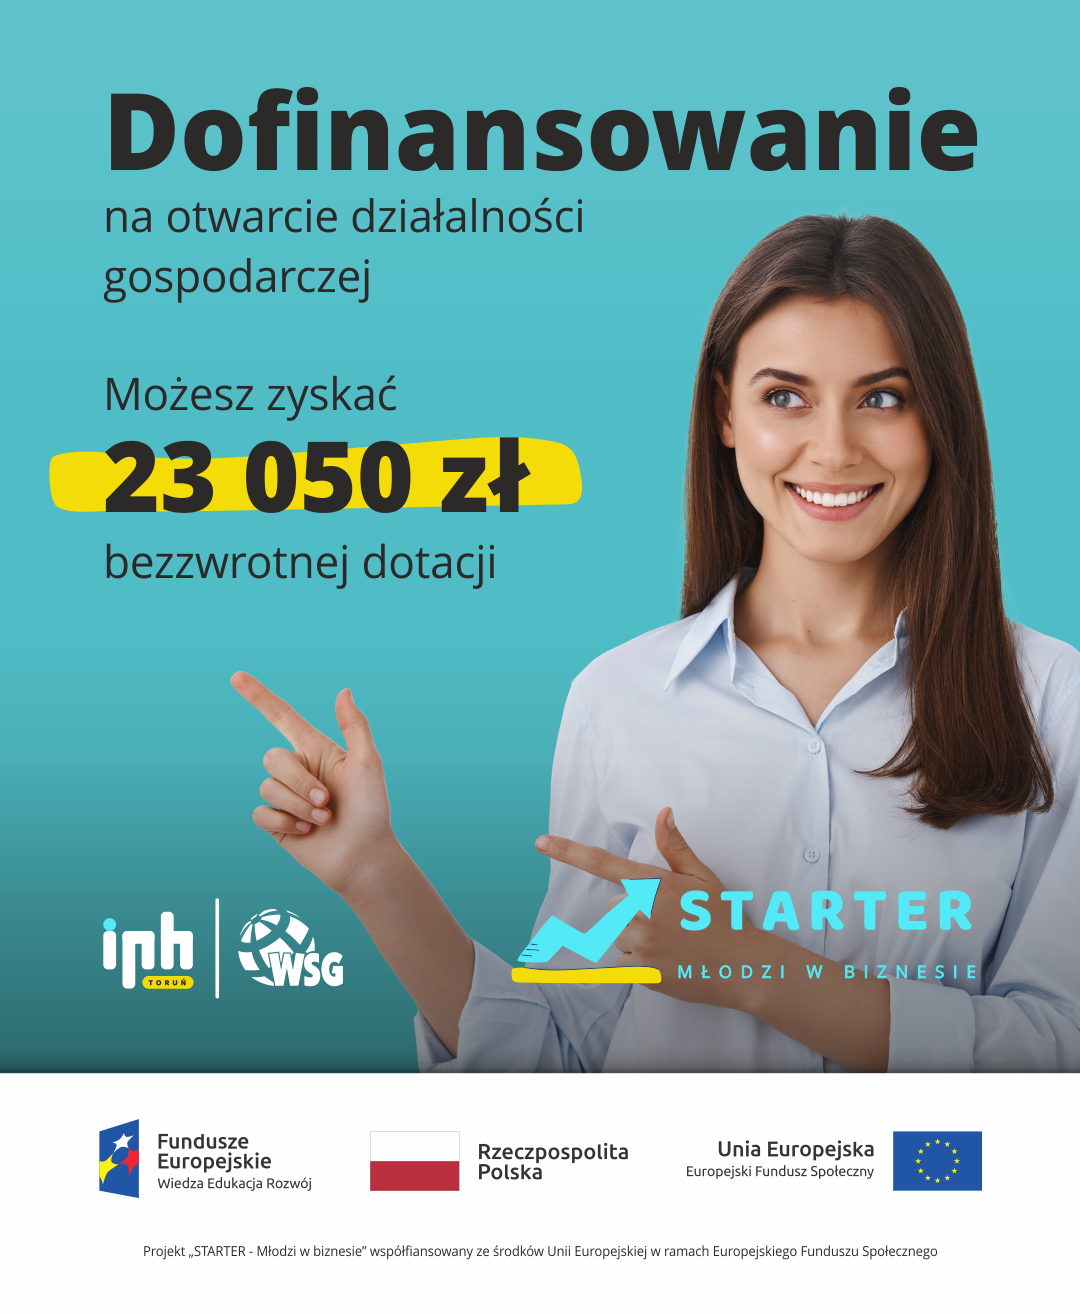 Zawiera tekst: "Dofinansowanie na otwarcie działalności gospodarczej. Możesz zyskać 23050zł bezzwrotnej dotacji projekt "STARTER - Młodzi w biznesie" realizowany przez Izbę Przemysłowo-Handlową w Toruniu oraz Wyższą Szkołę Gospodarki w Bydgoszczy"